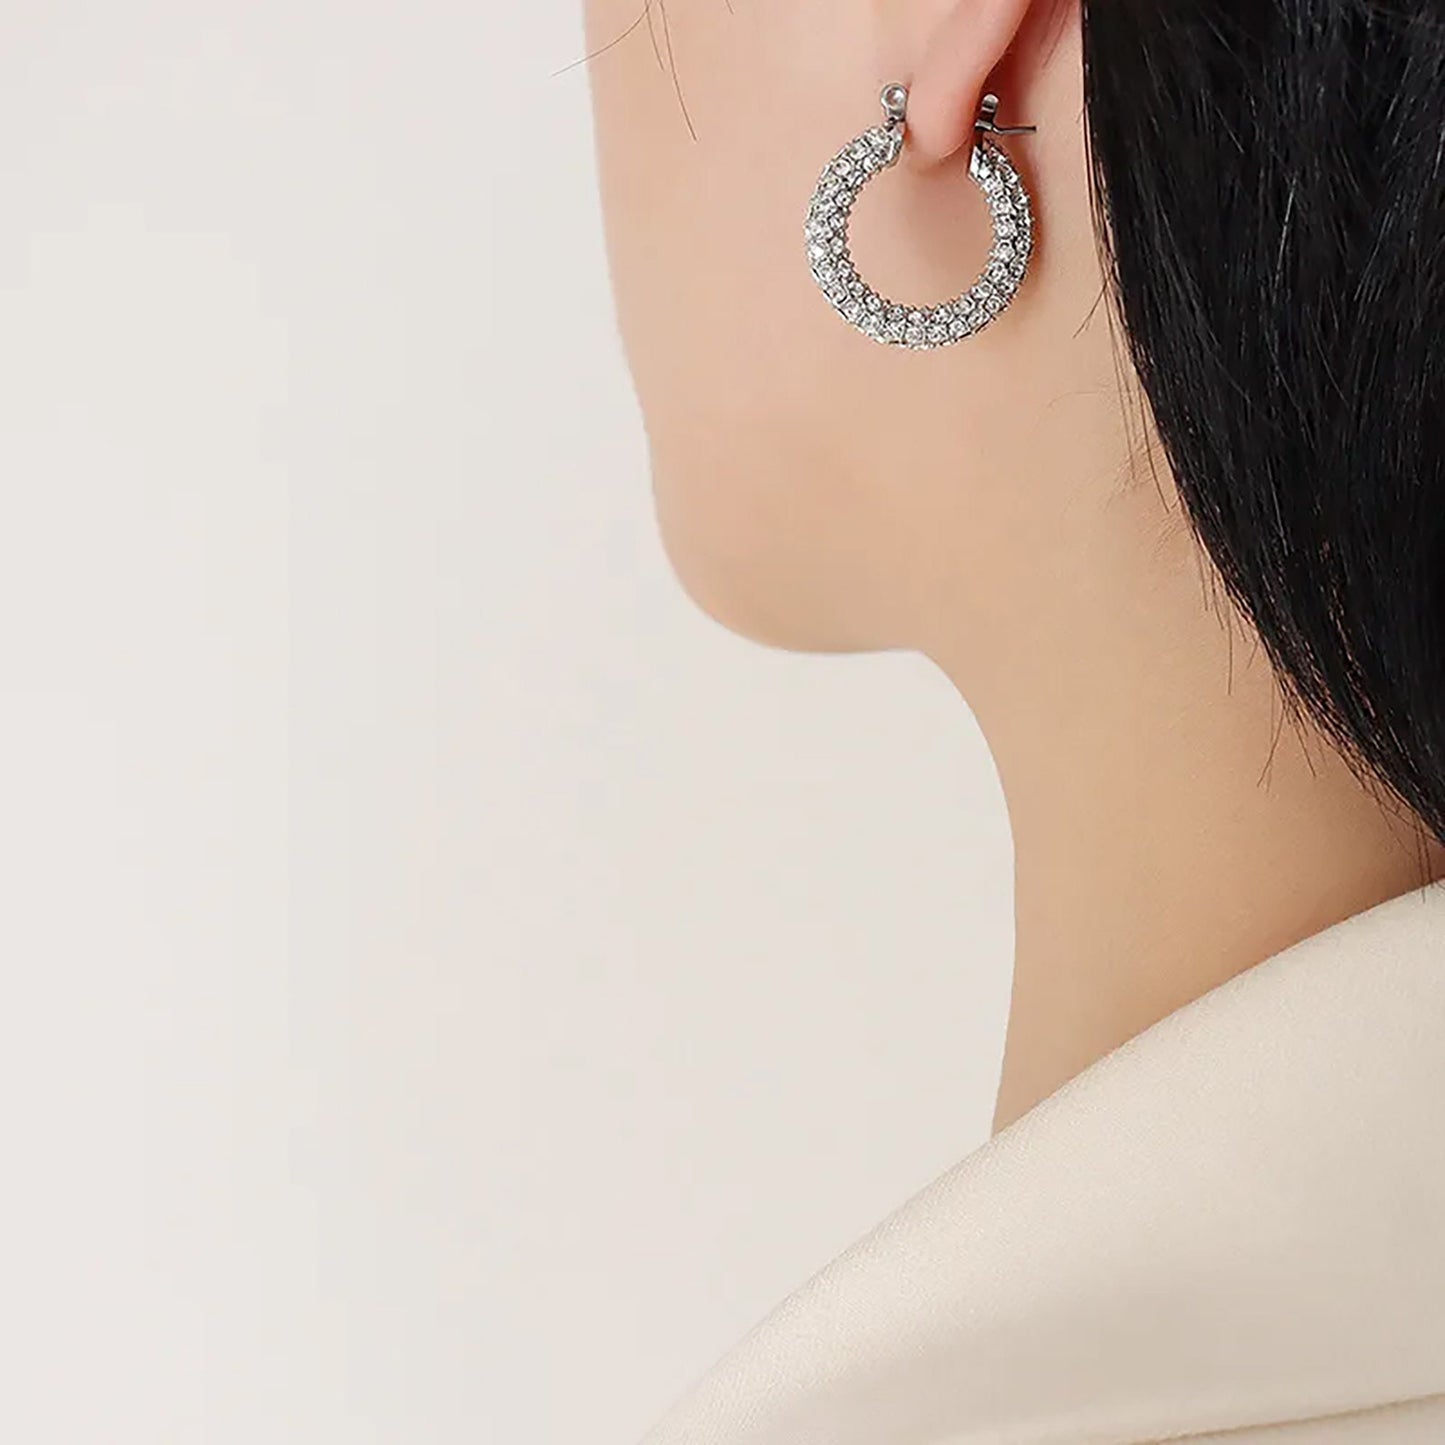 Titanium Rhinestones Hoop Earrings, Non Tarnish Earrings, Implant Grade Titanium Waterproof Earrings, Vintage Style Earrings, Minimal